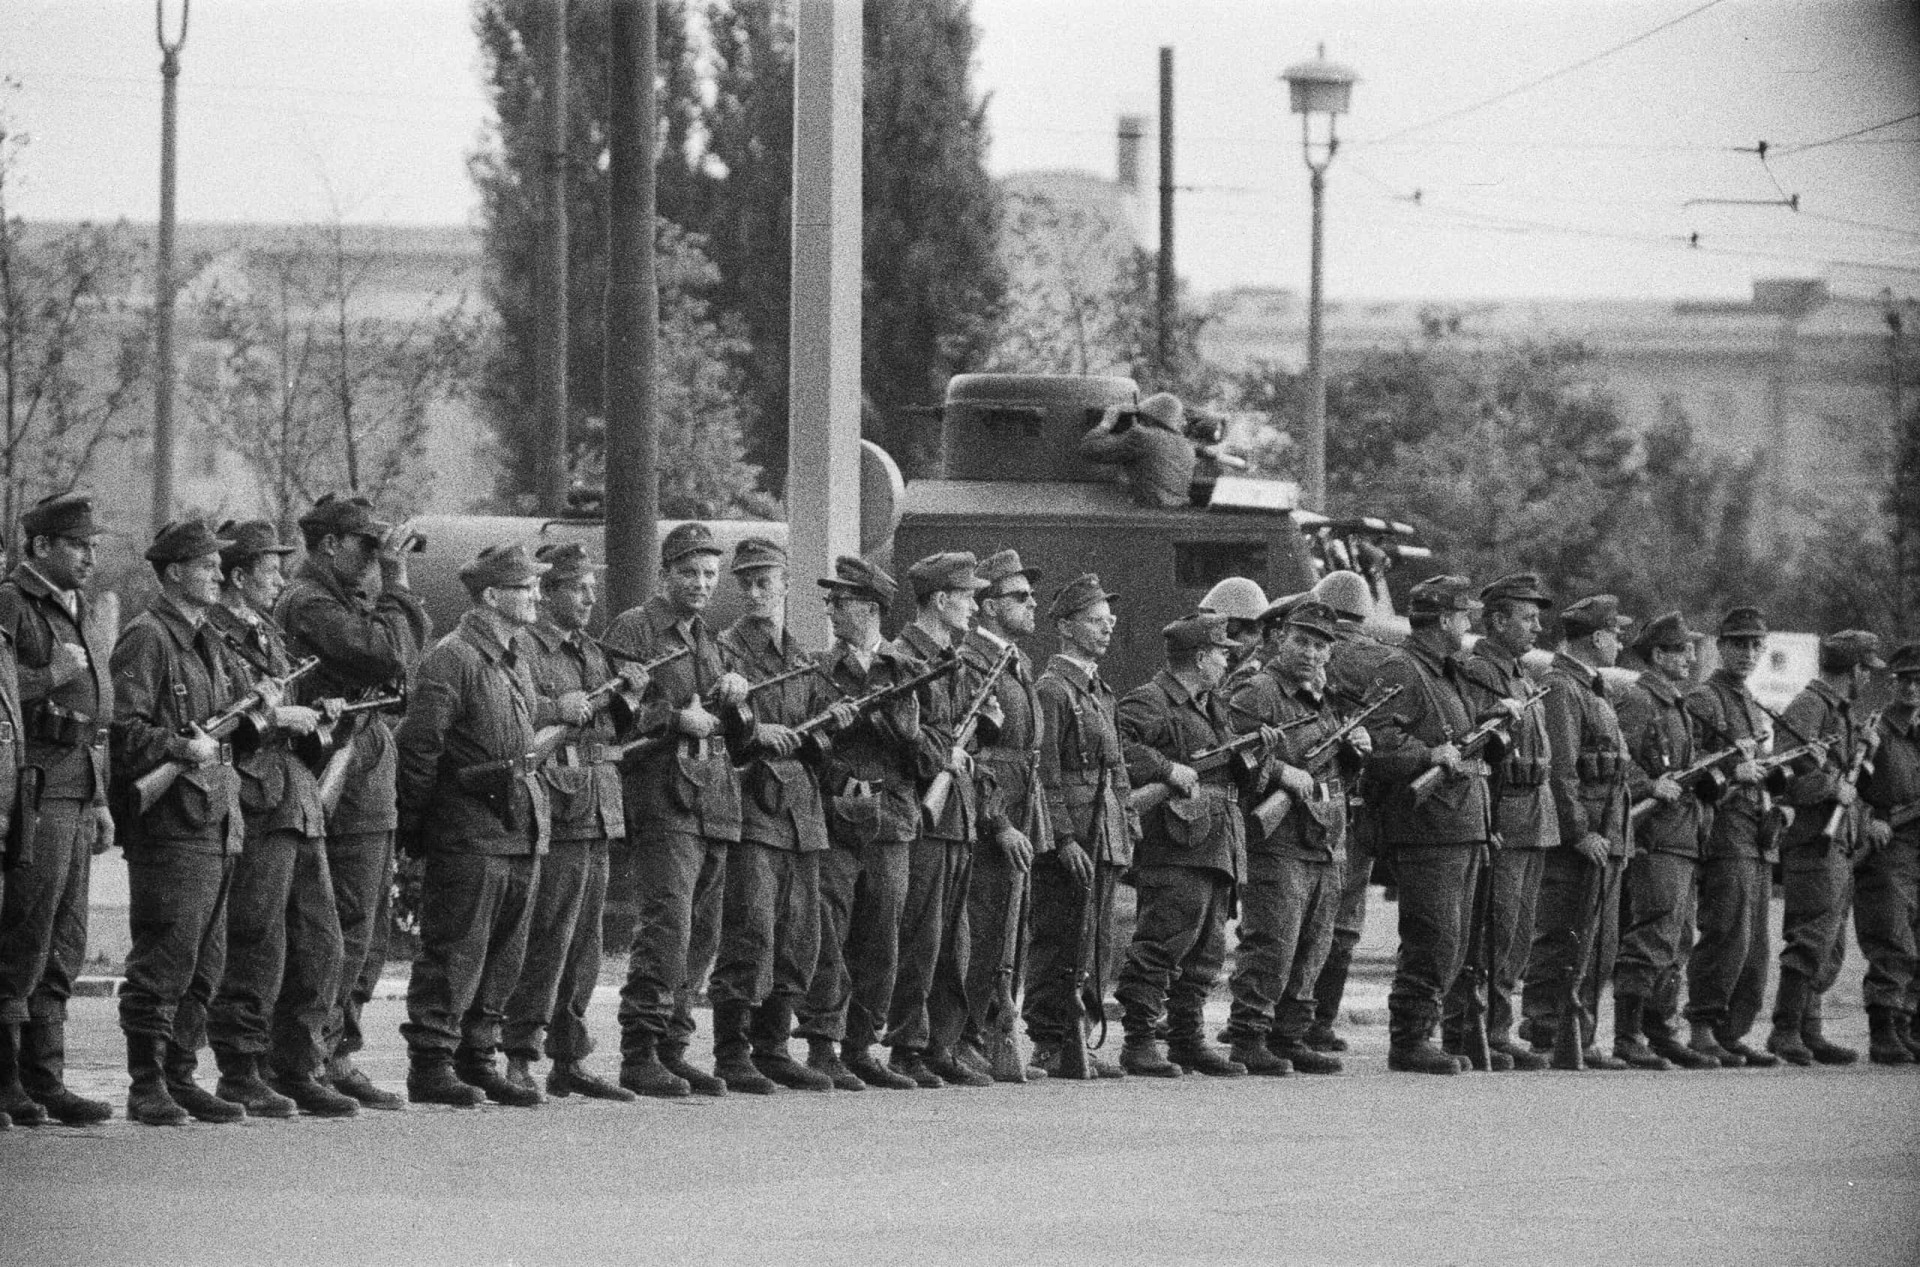 <p>Um Mitternacht am Sonntag, den 13. August, begannen die Polizei und Einheiten der ostdeutschen Sicherheitskräfte, die Grenze zu schließen. Am Morgen war die Grenze zu West-Berlin geschlossen. Am selben Tag beginnt der Bau der Berliner Mauer.</p>